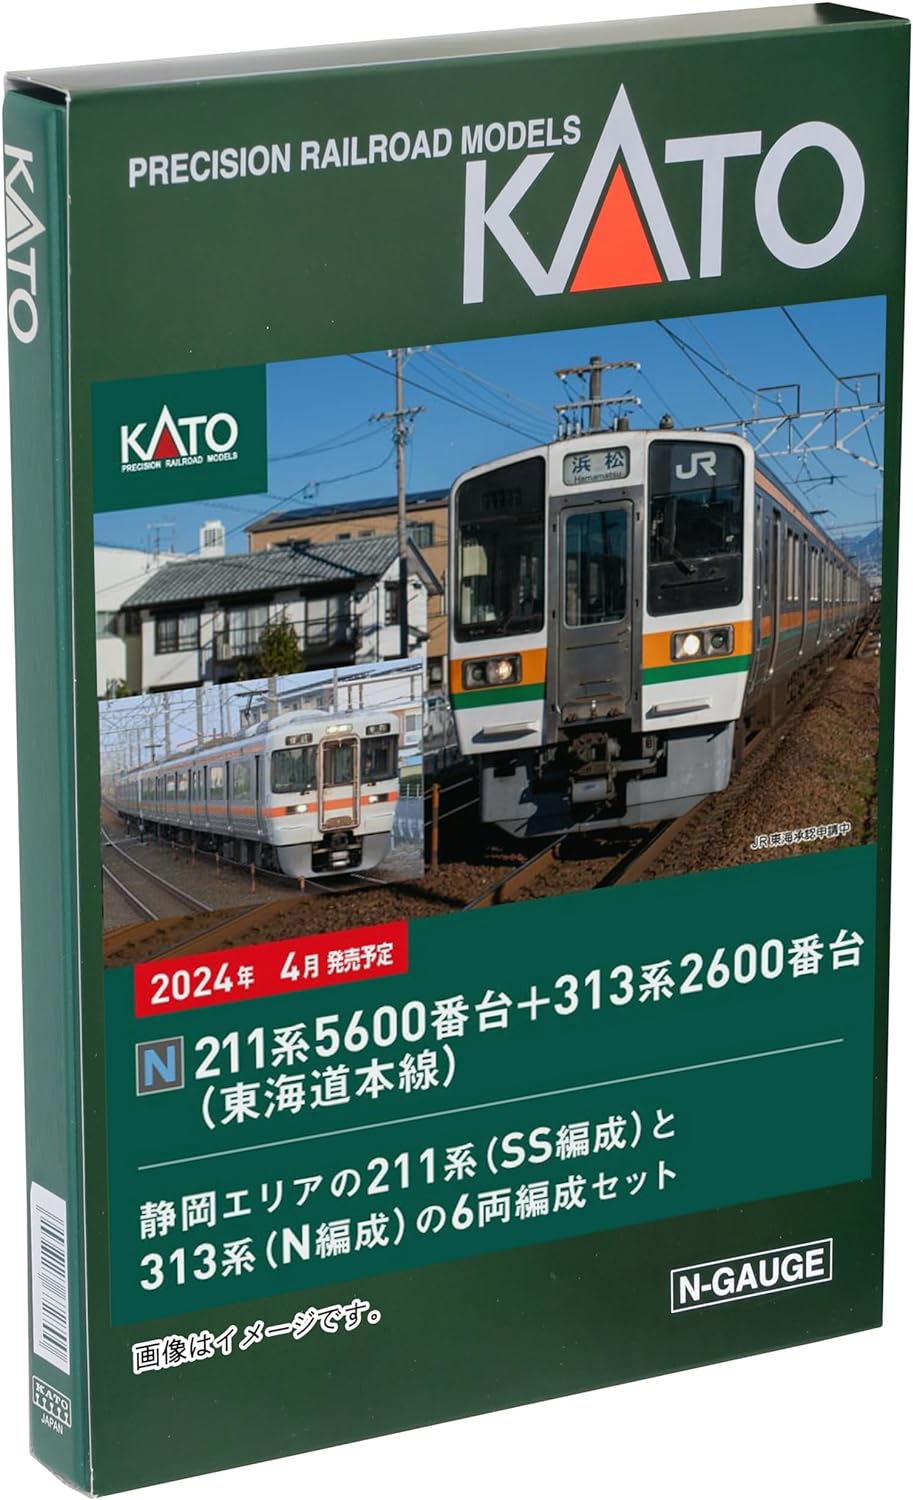 KATO 10-1862 N Gauge 211 Series 5600 Series + 313 Series 2600 Series Tokaido Main Line 6 Car Set